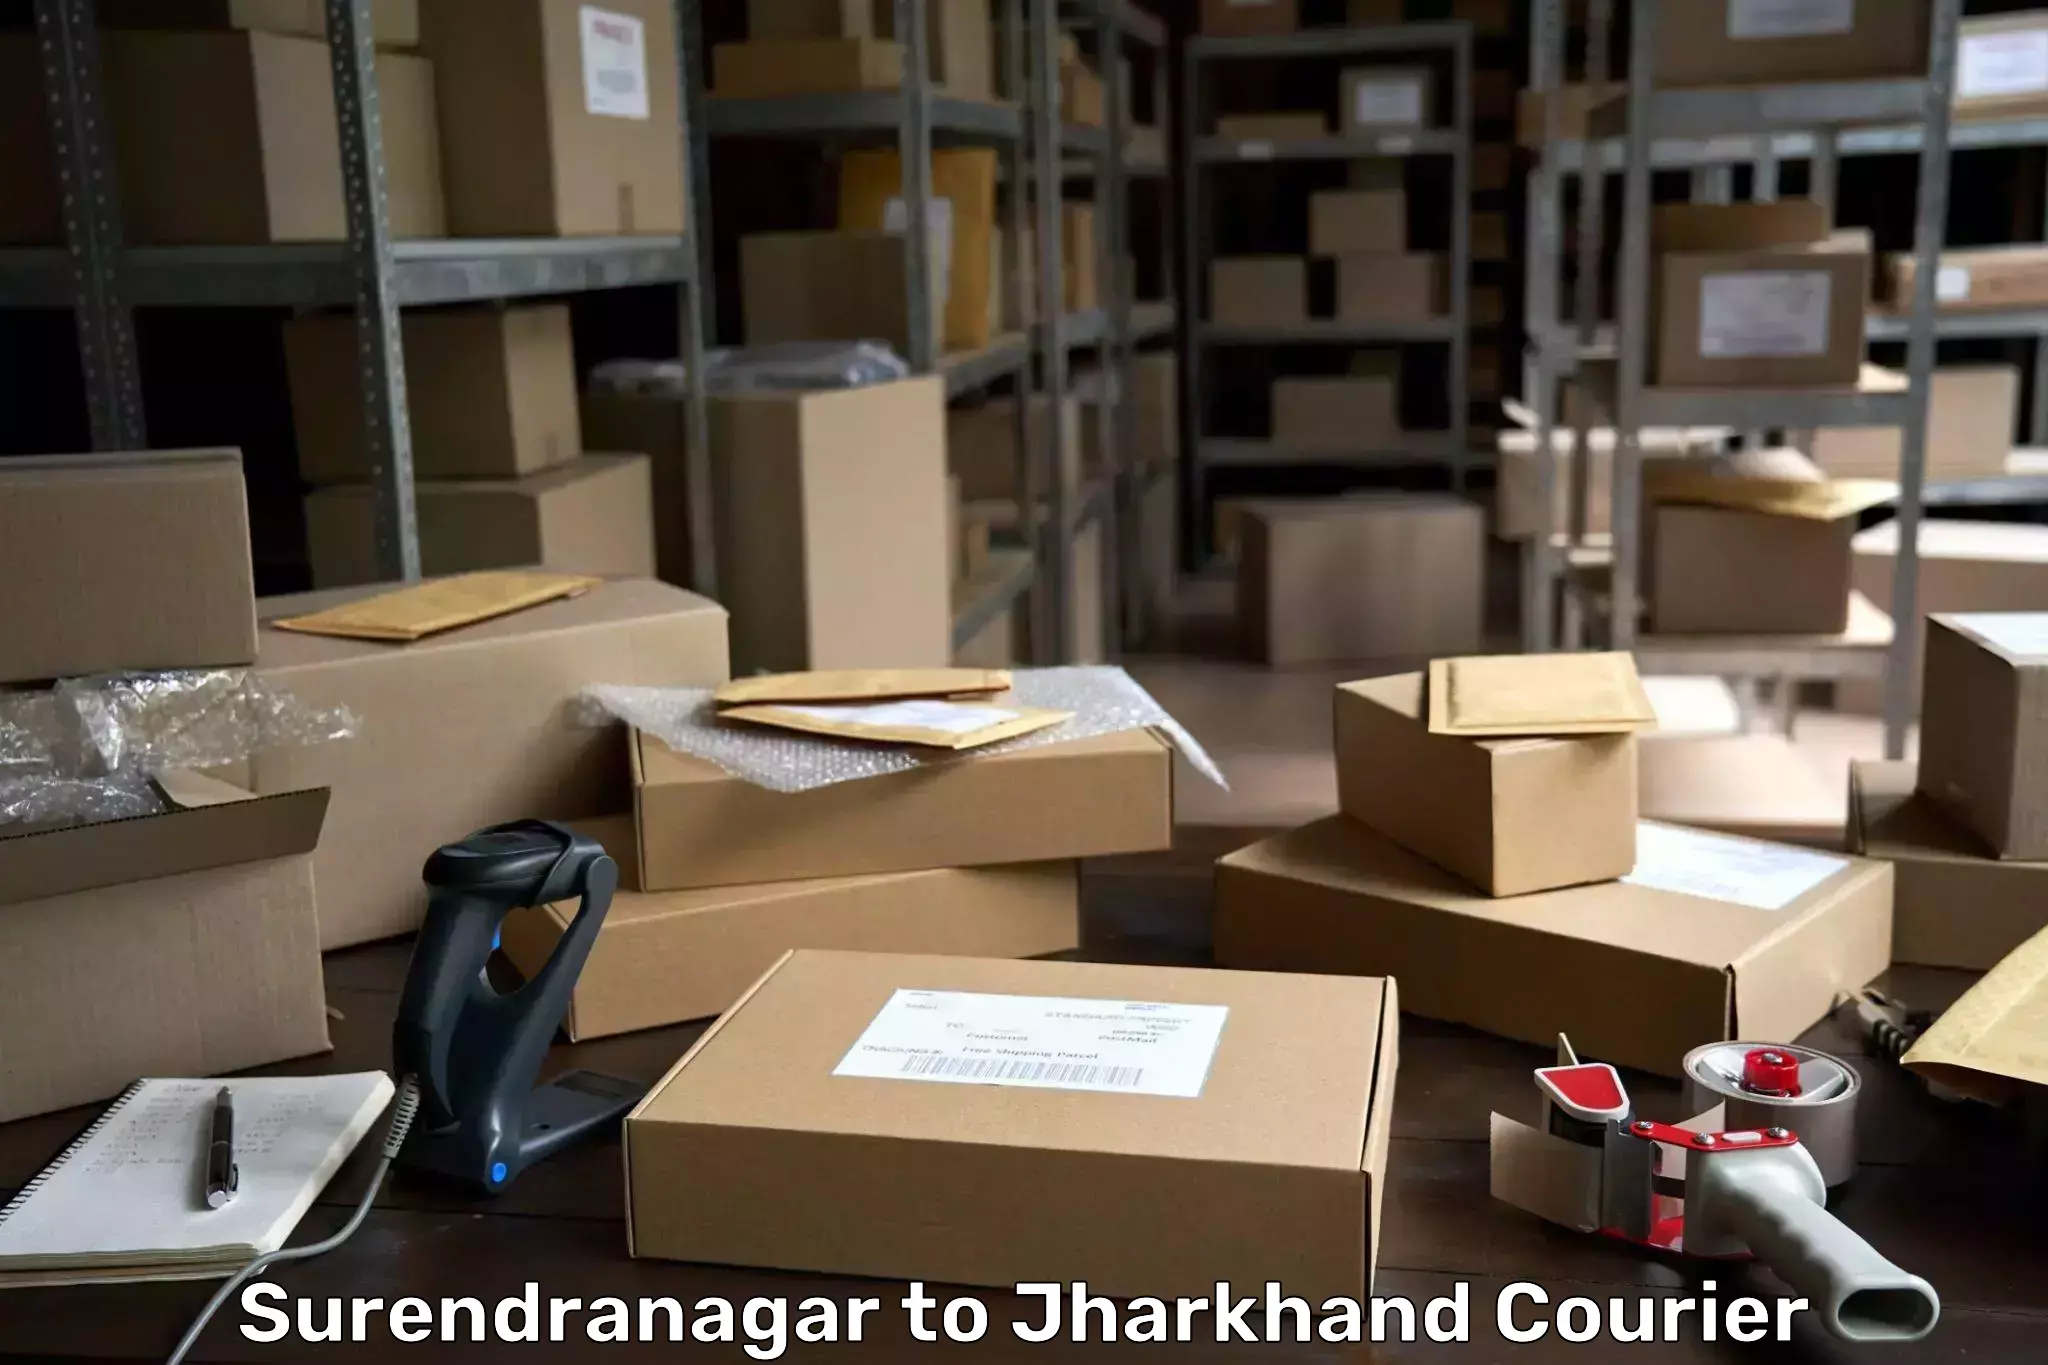 Local delivery service Surendranagar to Medininagar